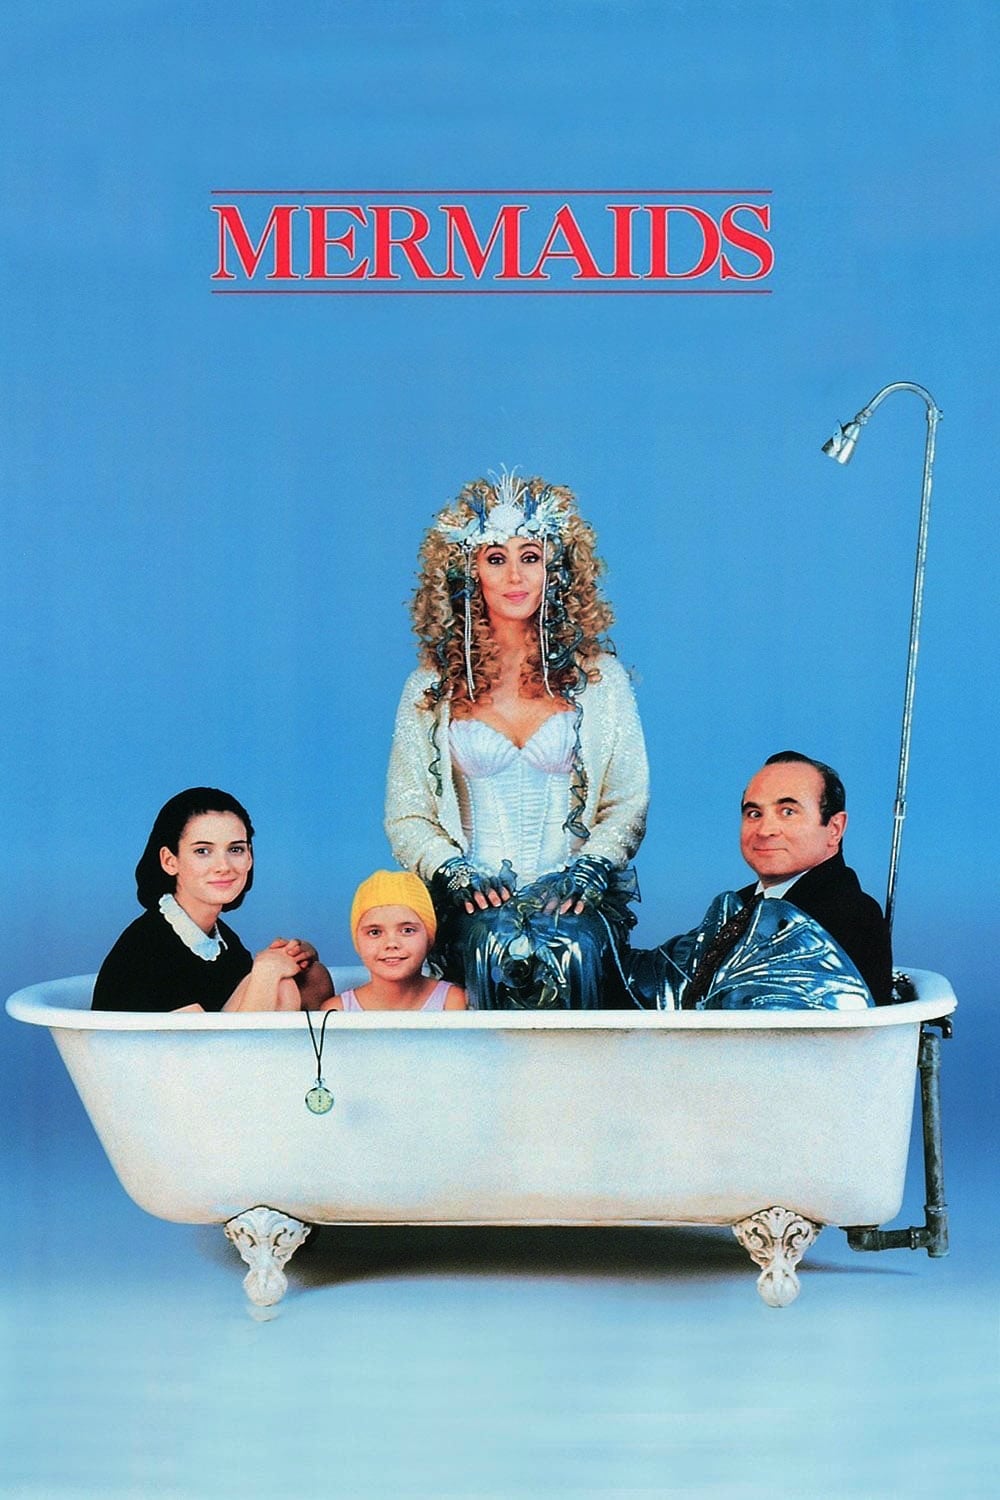 Les Deux Sirènes (1990)